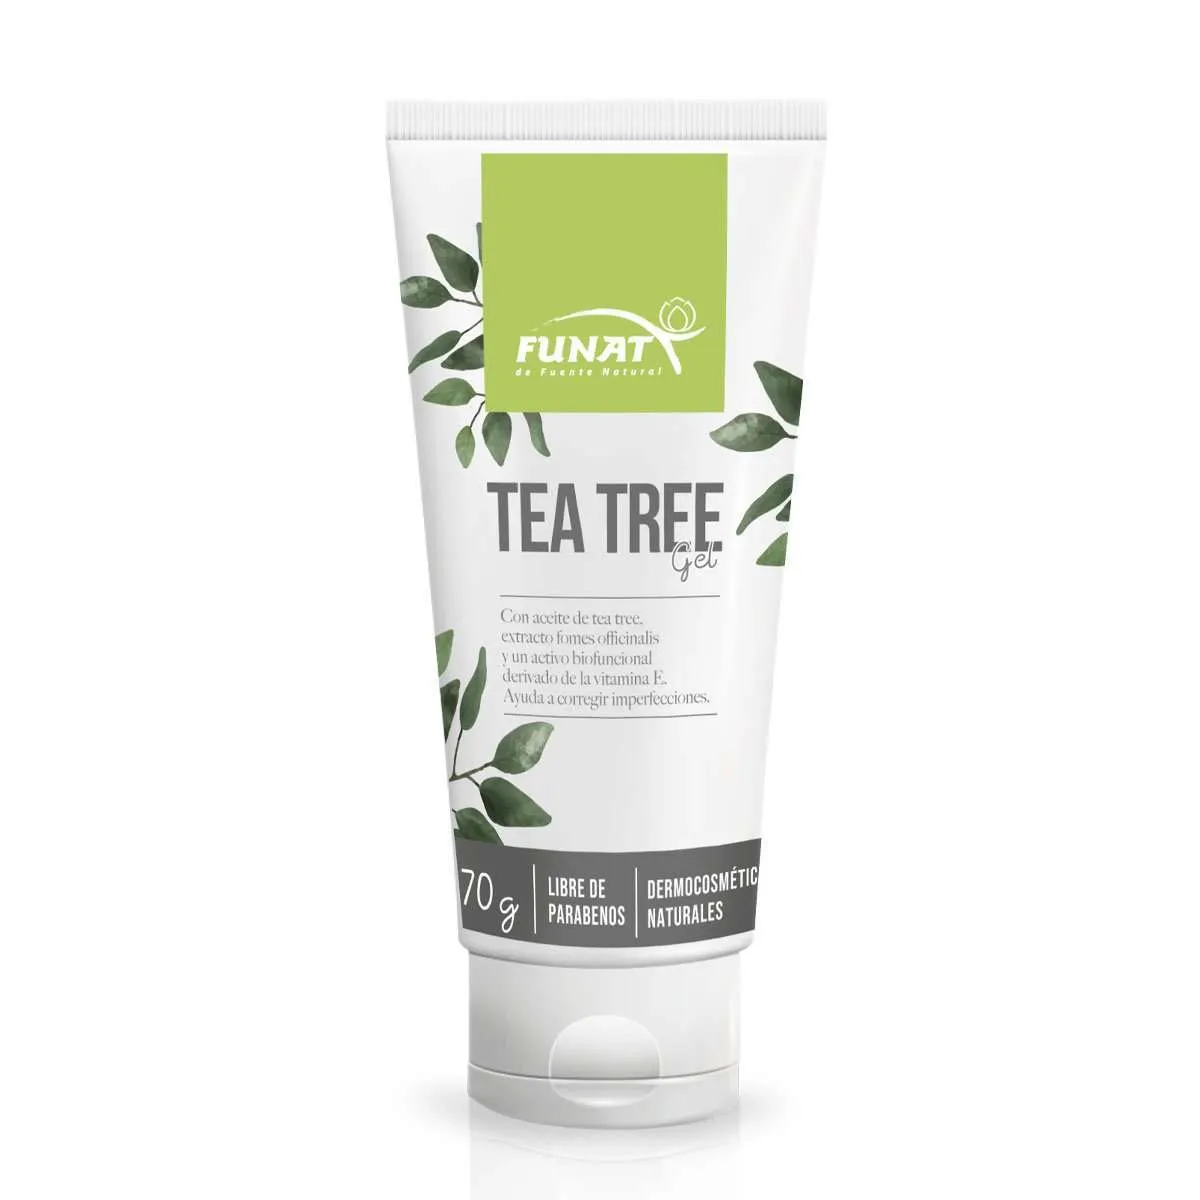 Gel tea tree 70 g - Frente del empaque - Funat